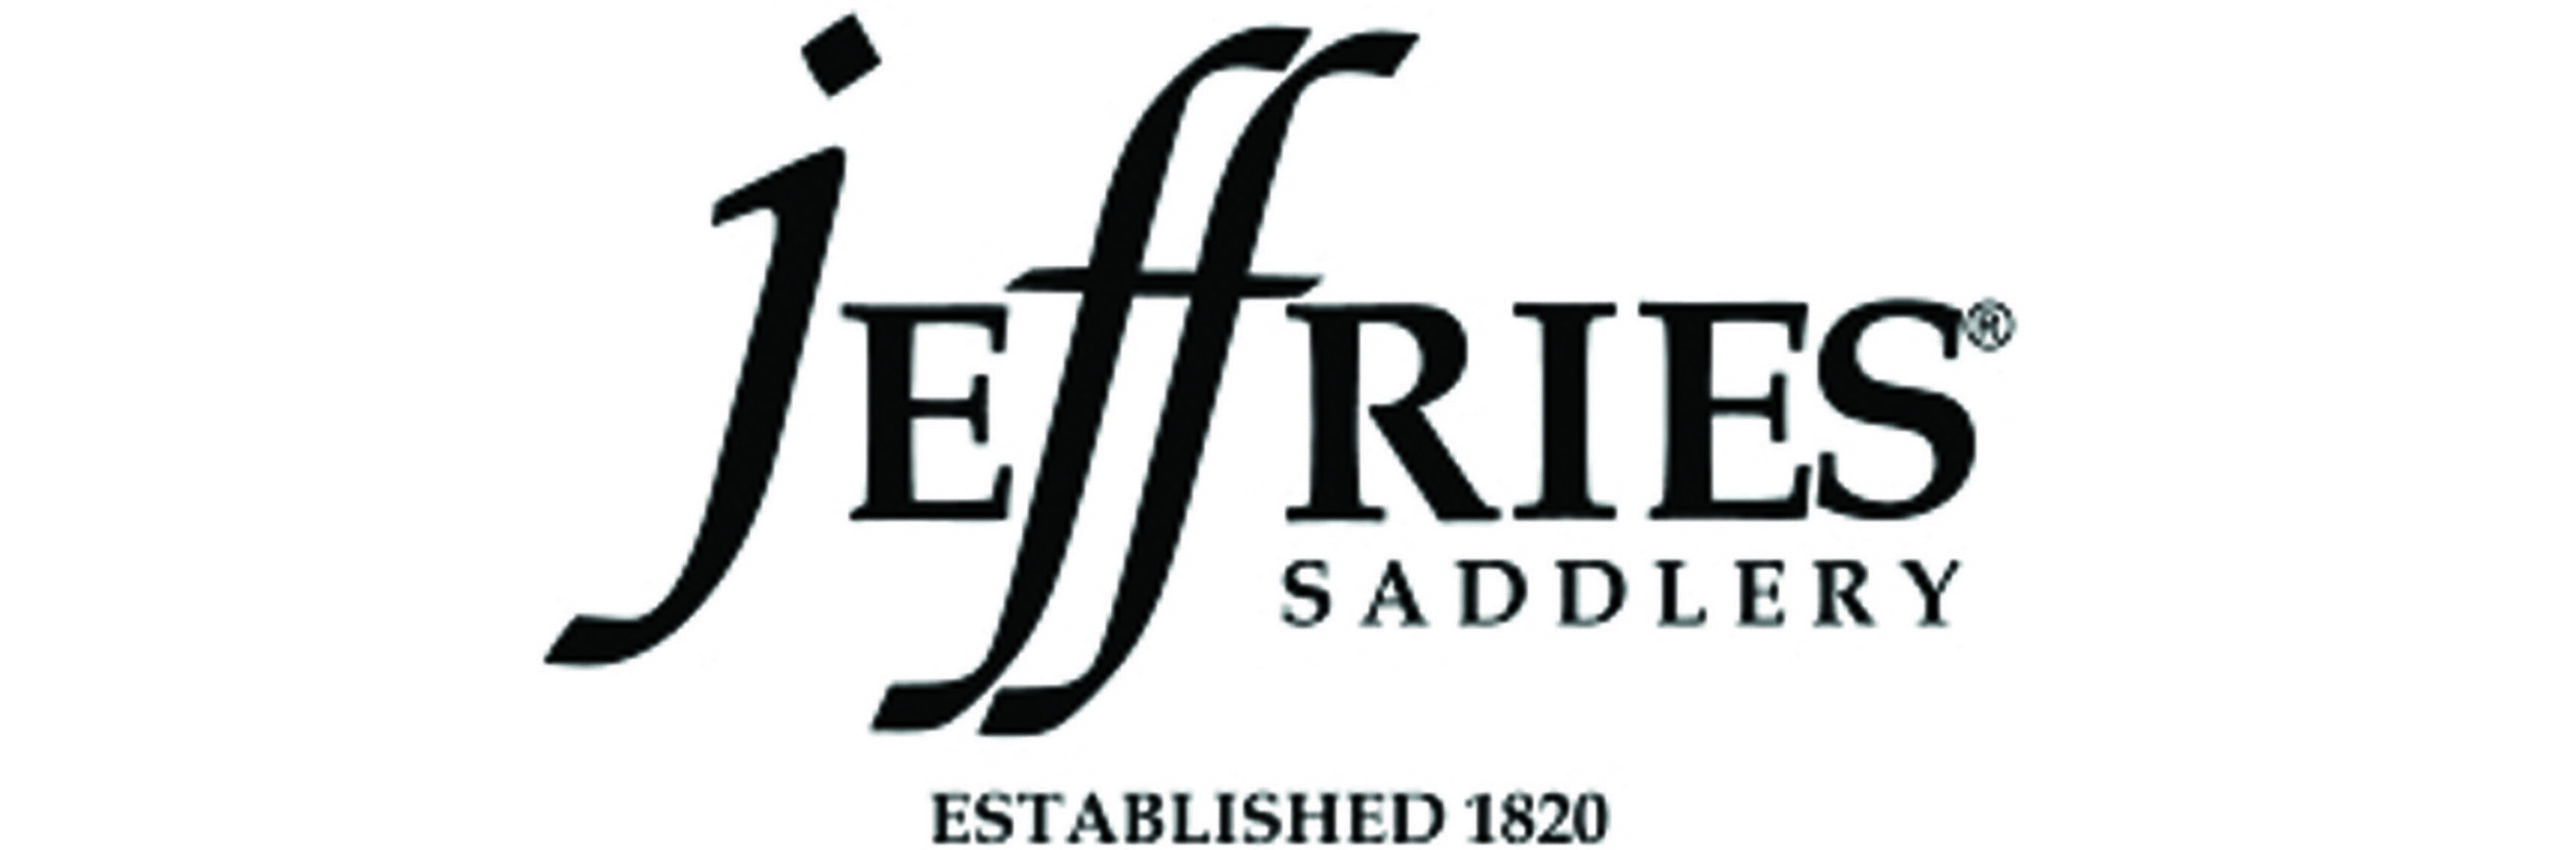 Logo Jeffries horse saddle